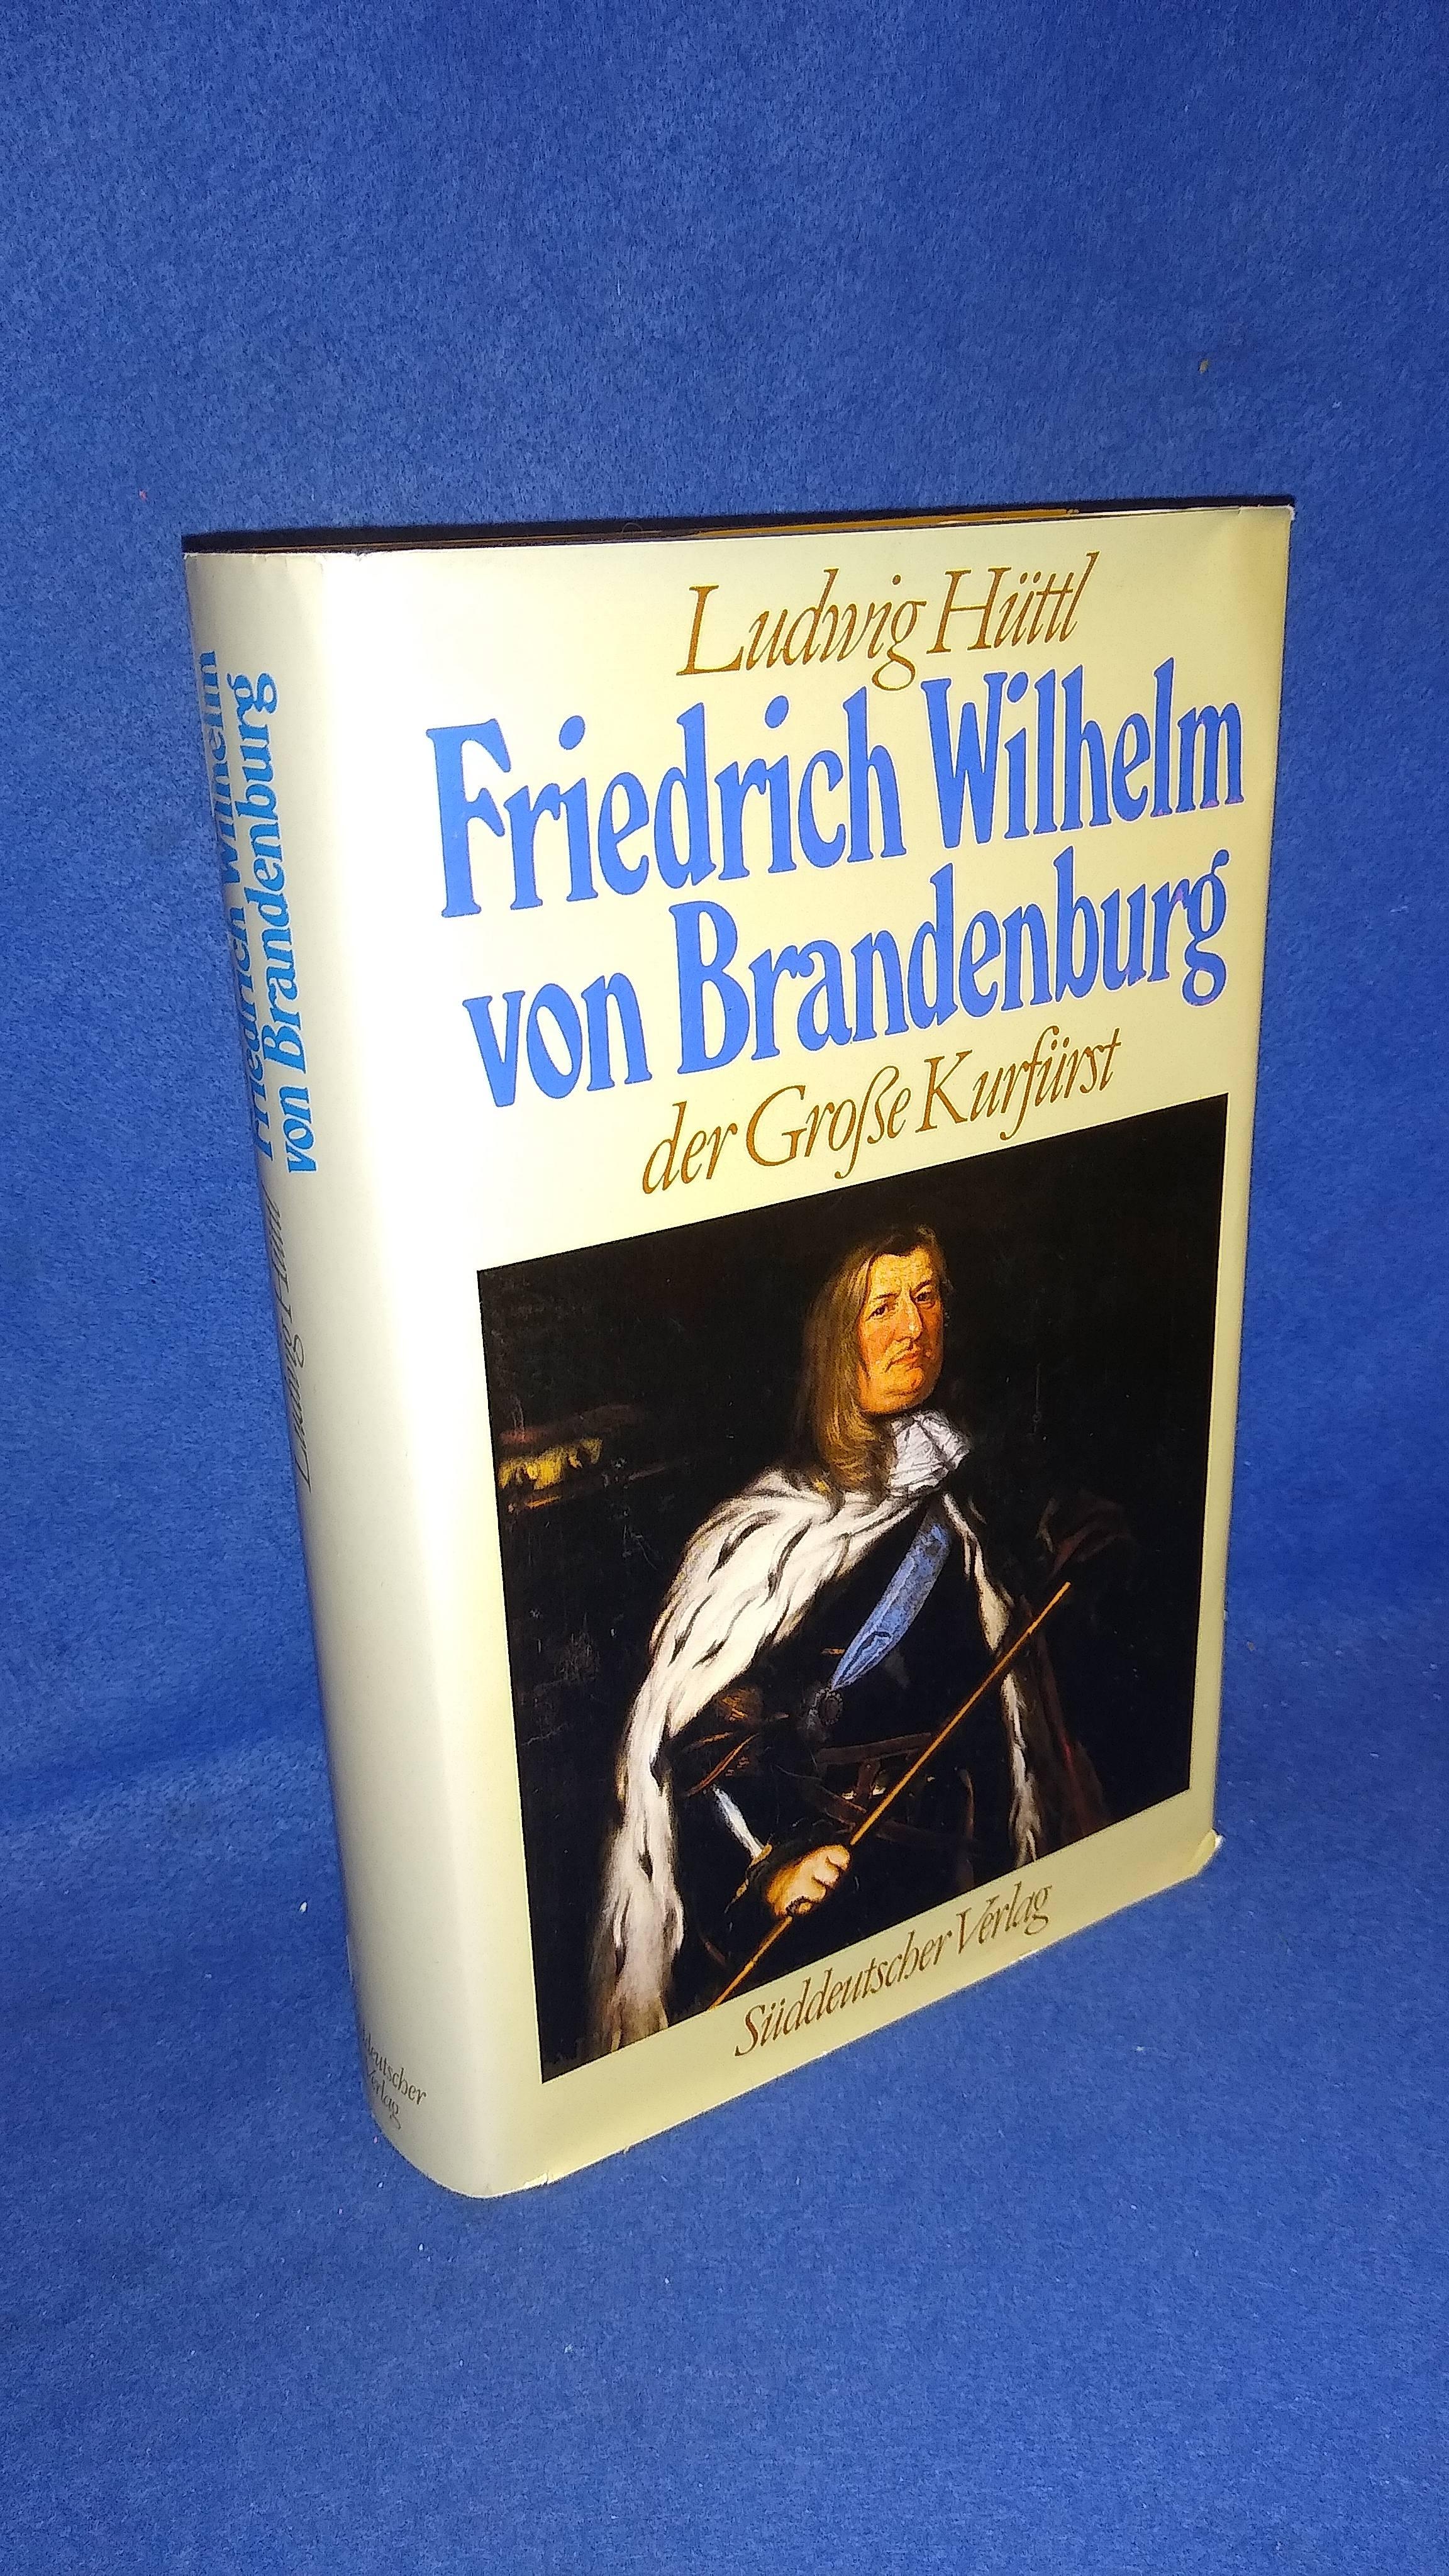  Friedrich Wilhelm von Brandenburg, der große Kurfürst!